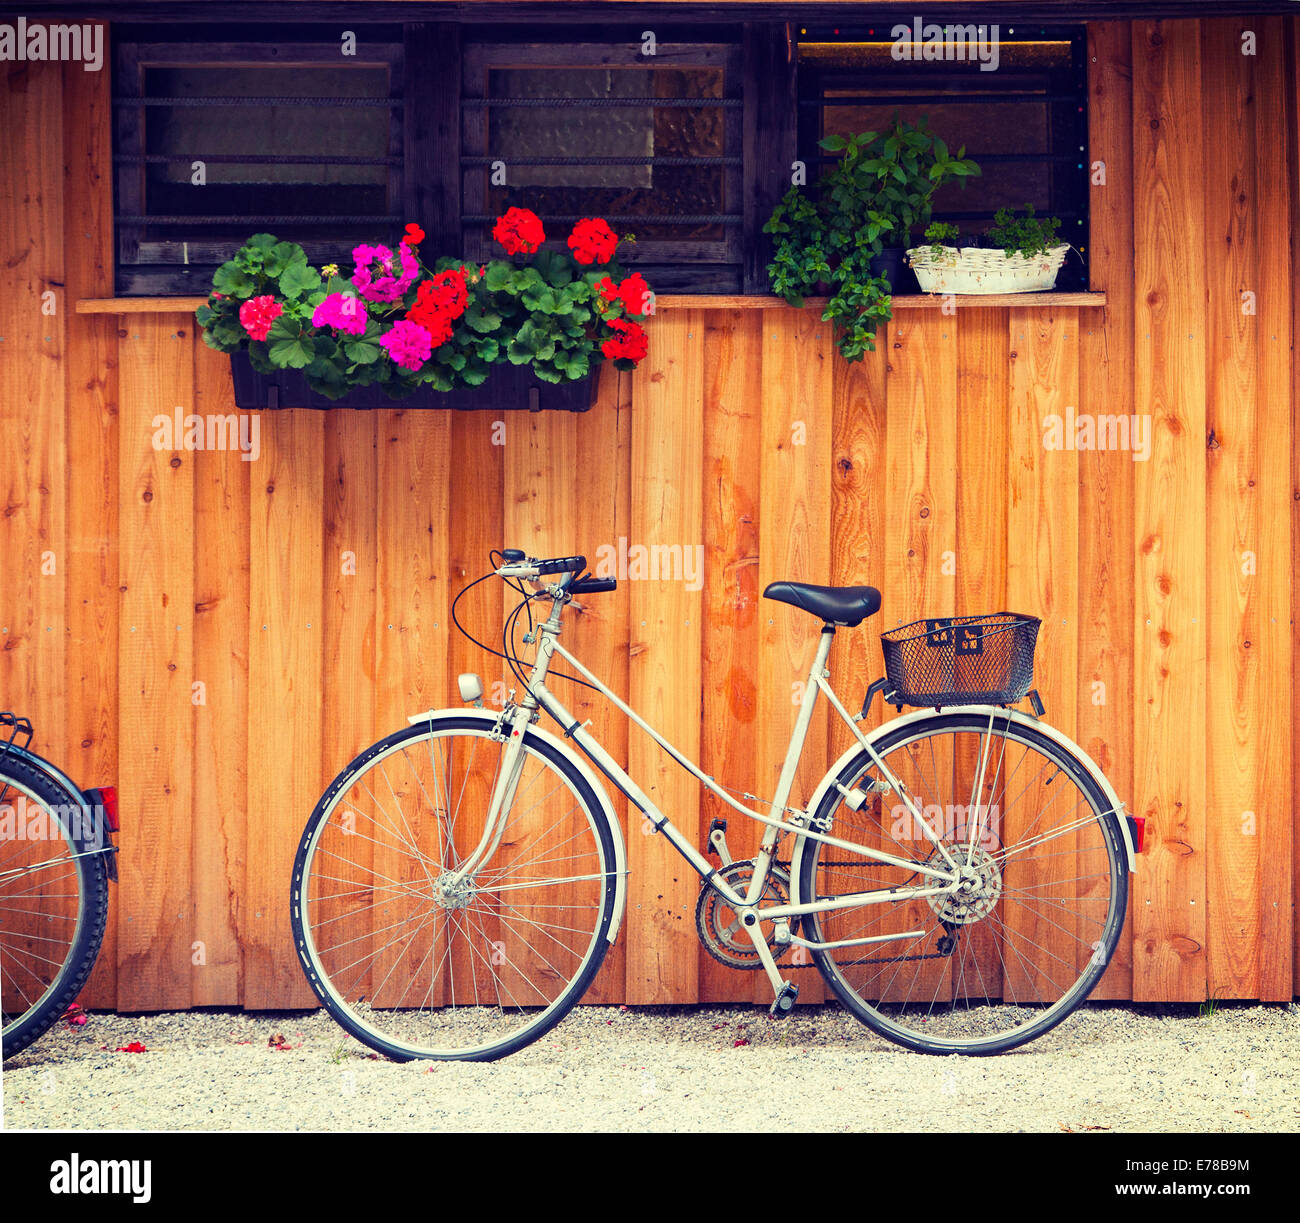 Fahrrad in der Nähe einer Holzhütte mit Geranien und Kräutern Vasen geparkt. Retro-Instagram-Effekt hinzugefügt. Stockfoto